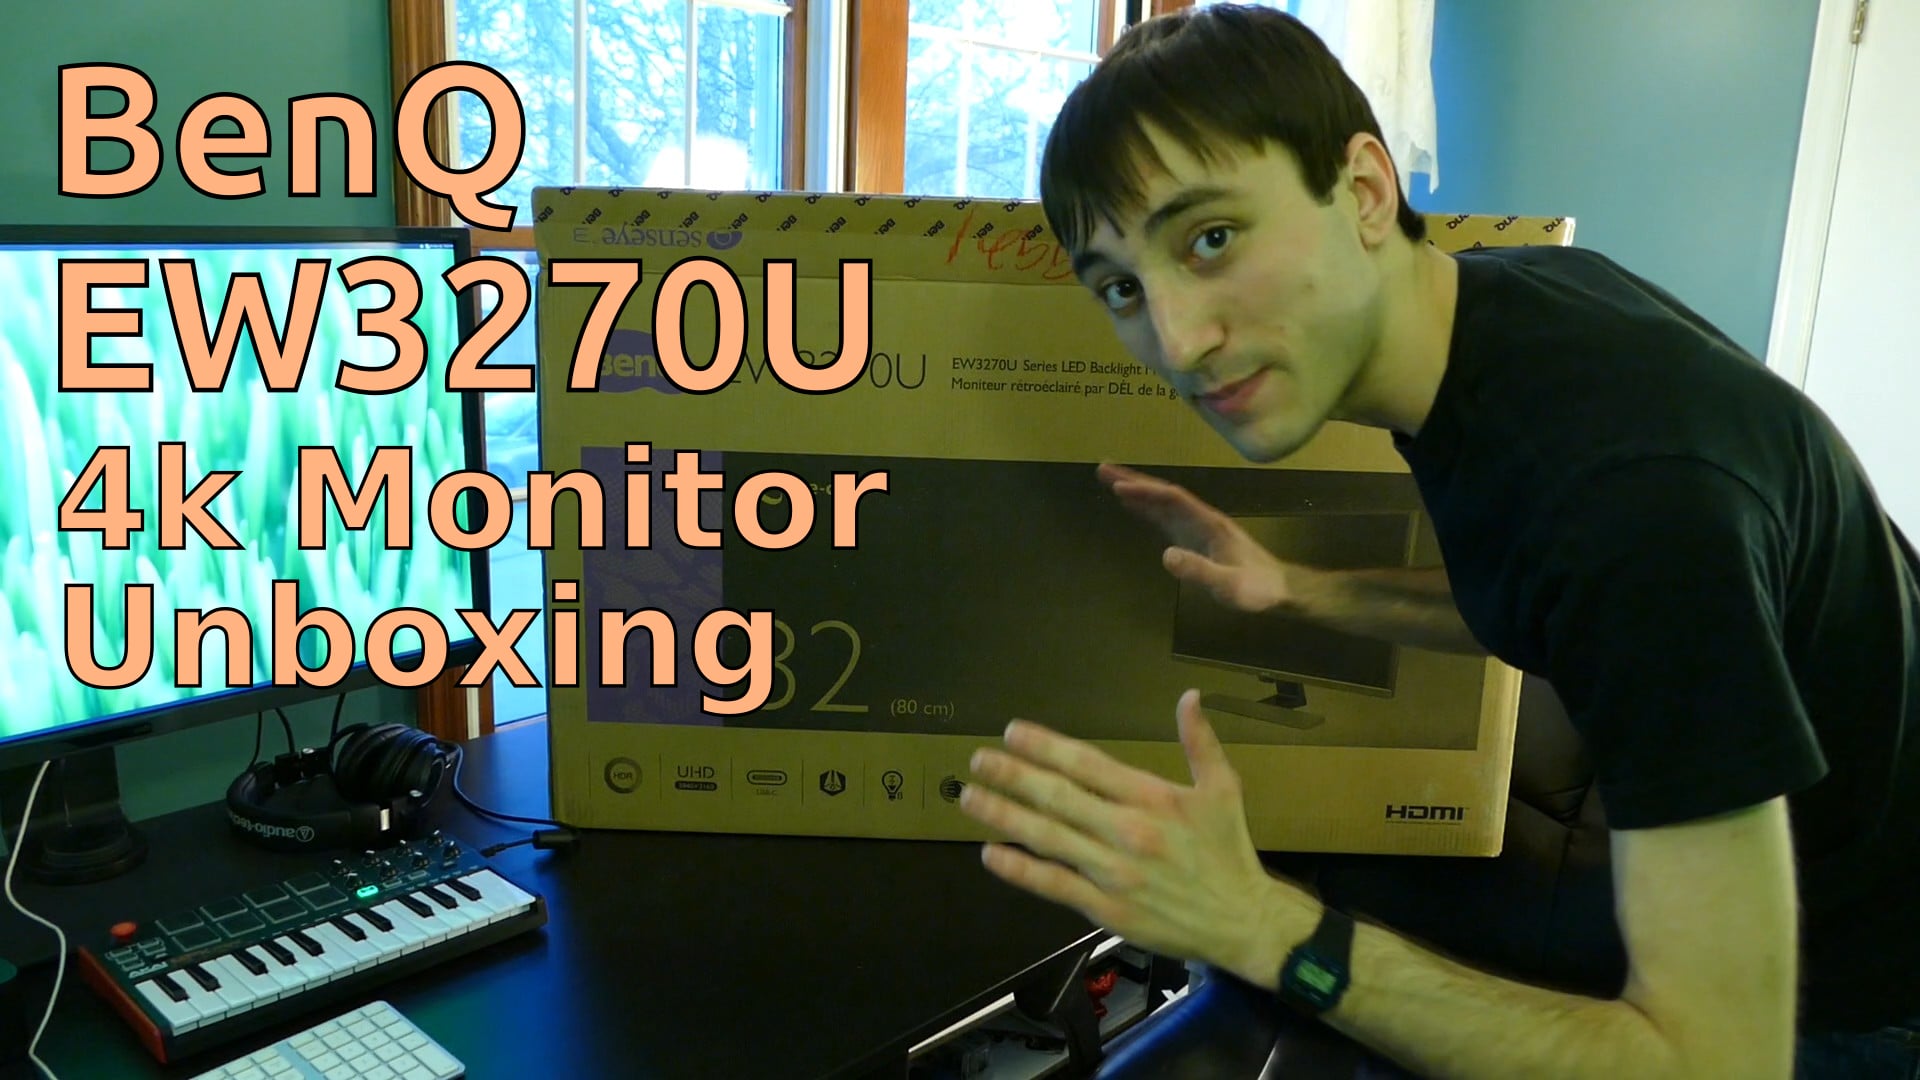 BenQ EW3270U Monitor Unboxing